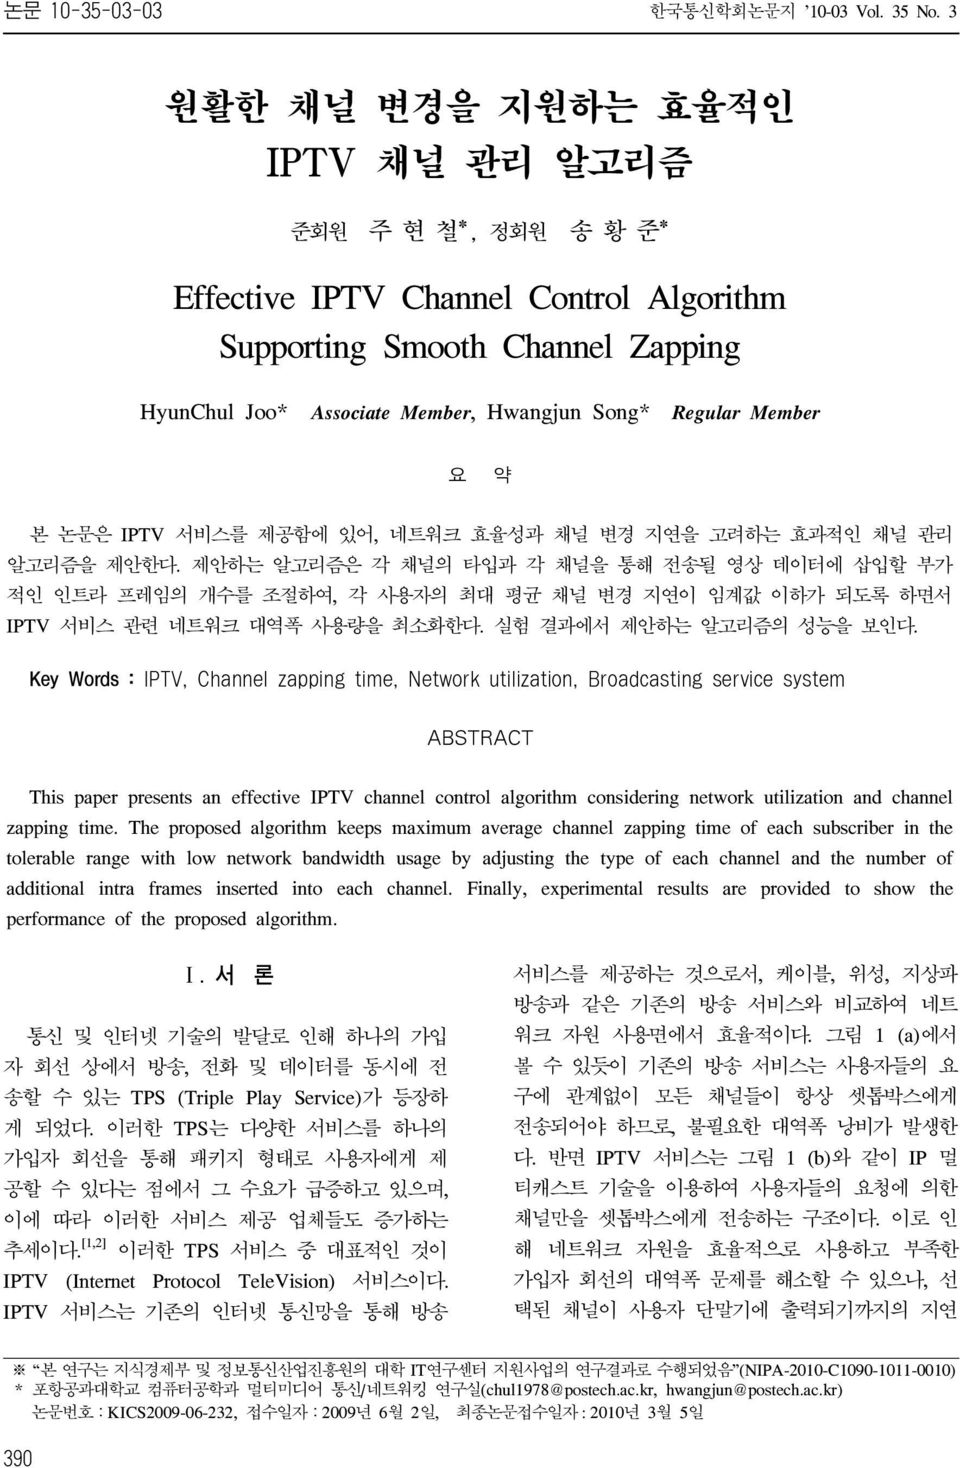 요 약 본 논문은 IPTV 서비스를 제공함에 있어, 네트워크 효율성과 채널 변경 지연을 고려하는 효과적인 채널 관리 알고리즘을 제안한다.